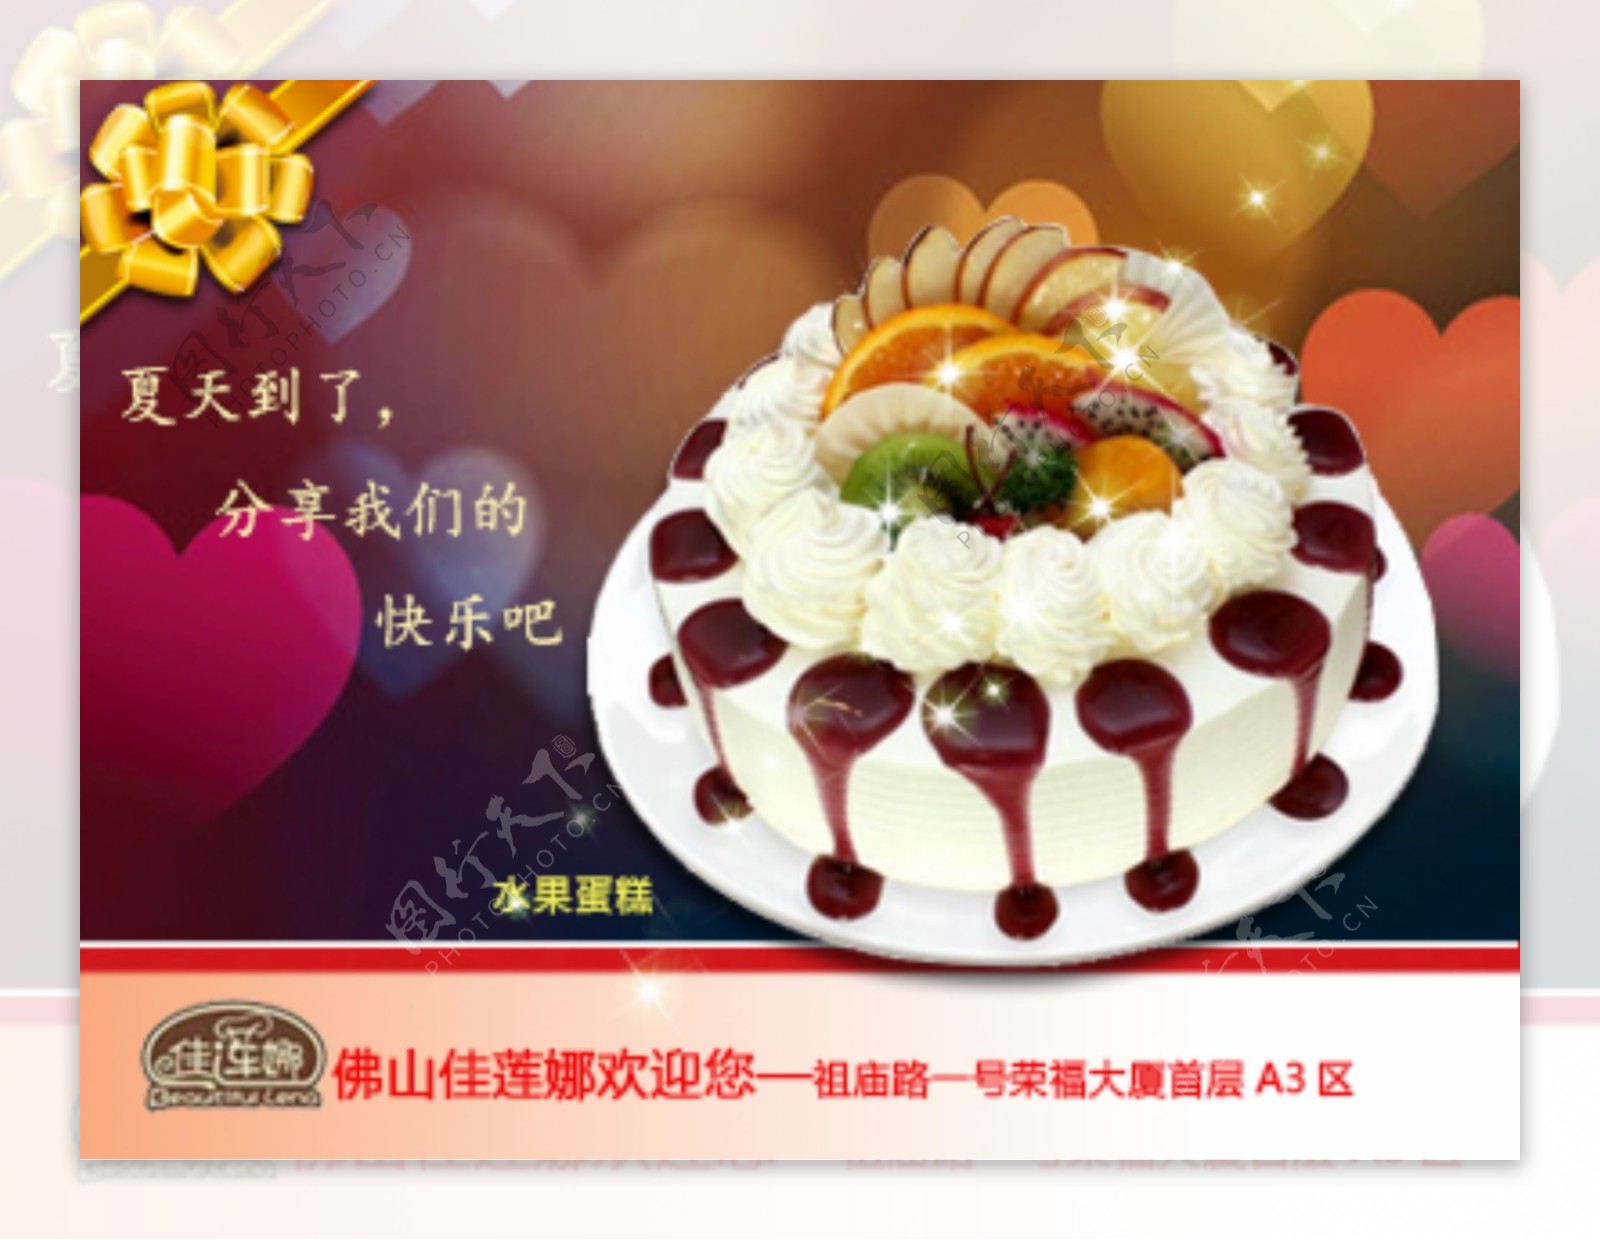 冰激凌生日蛋糕节日快乐PSD下载